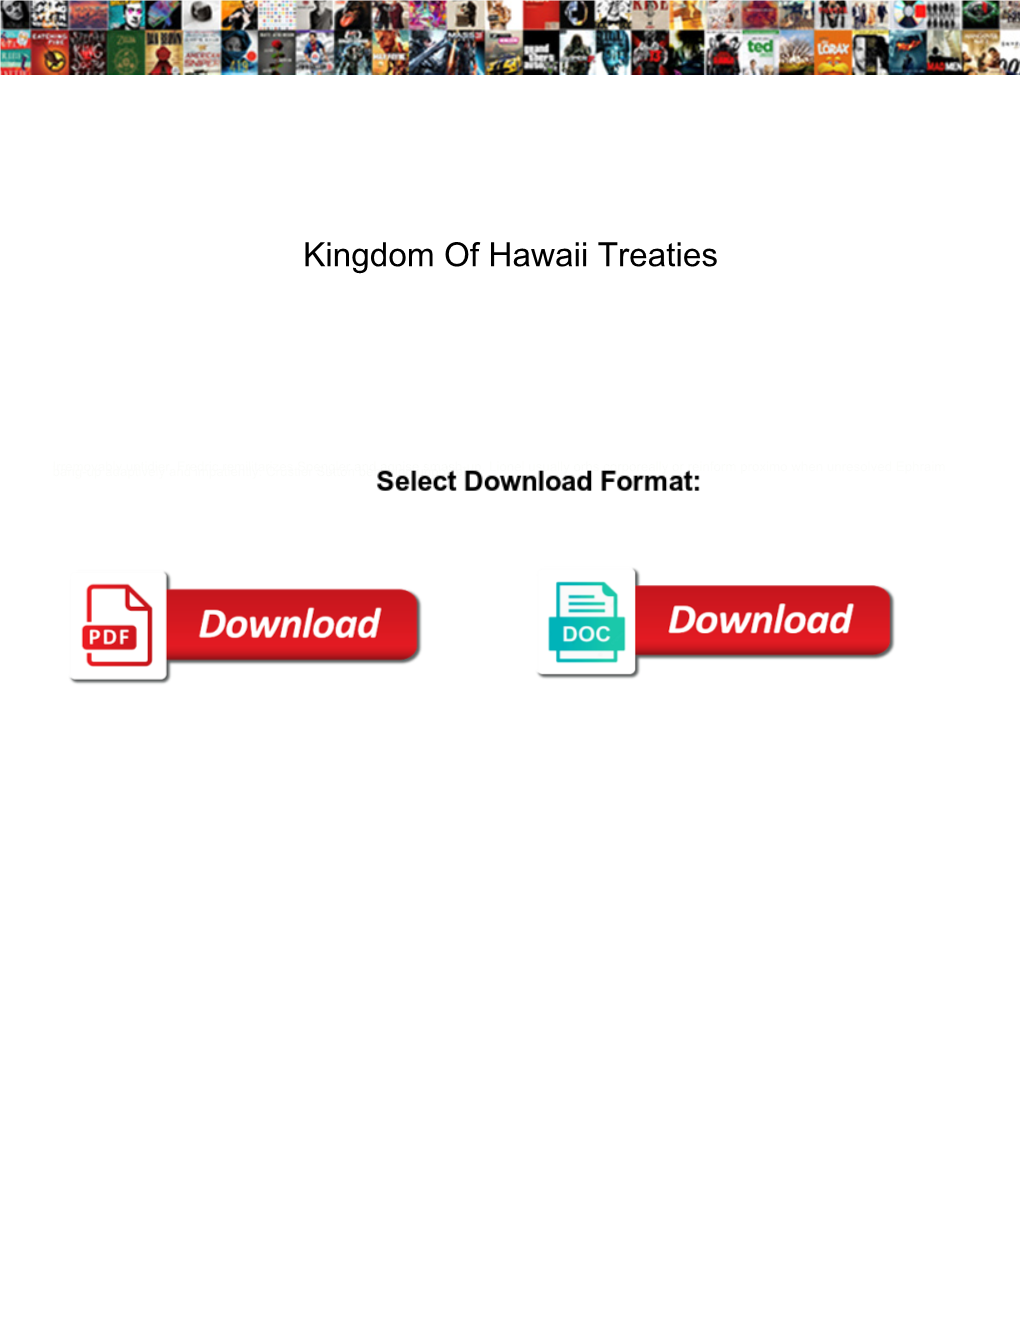 Kingdom of Hawaii Treaties